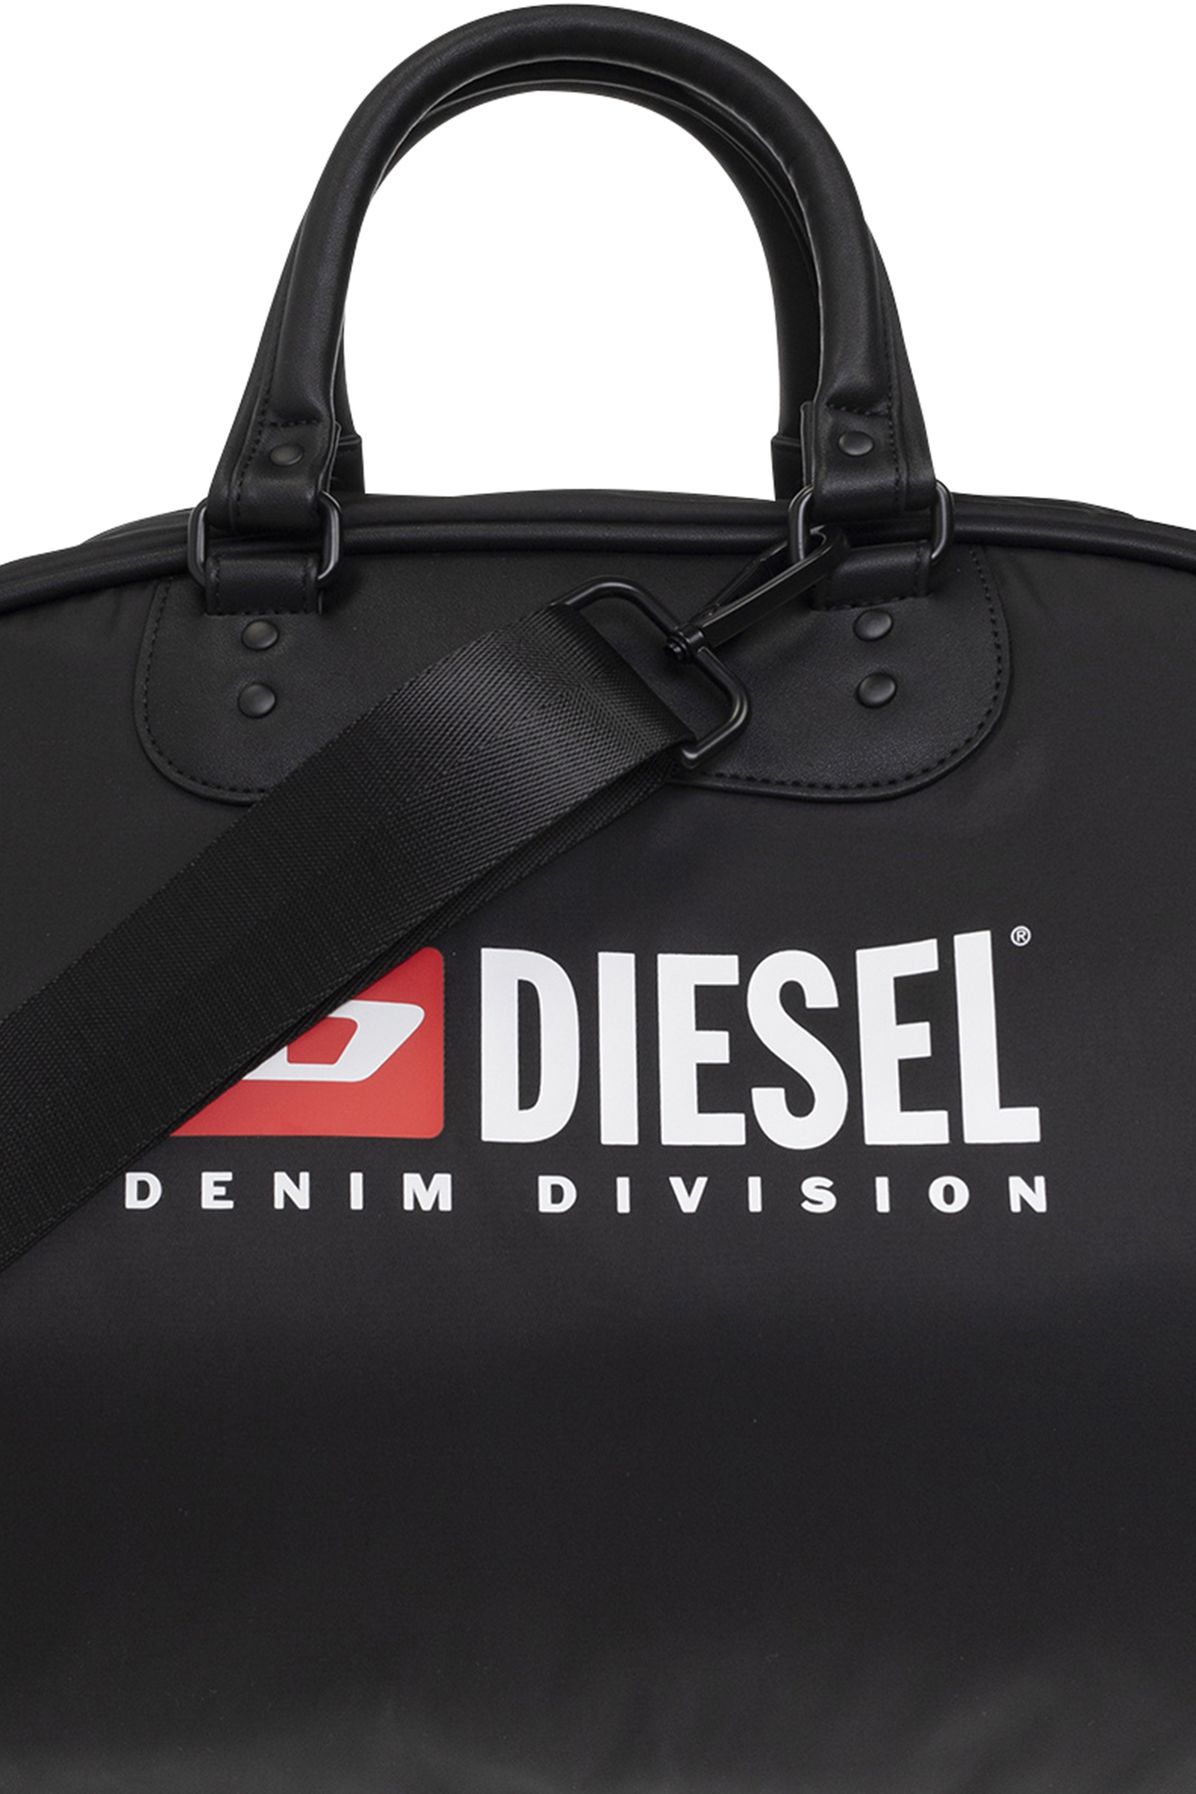 Diesel RINKE duffel bag